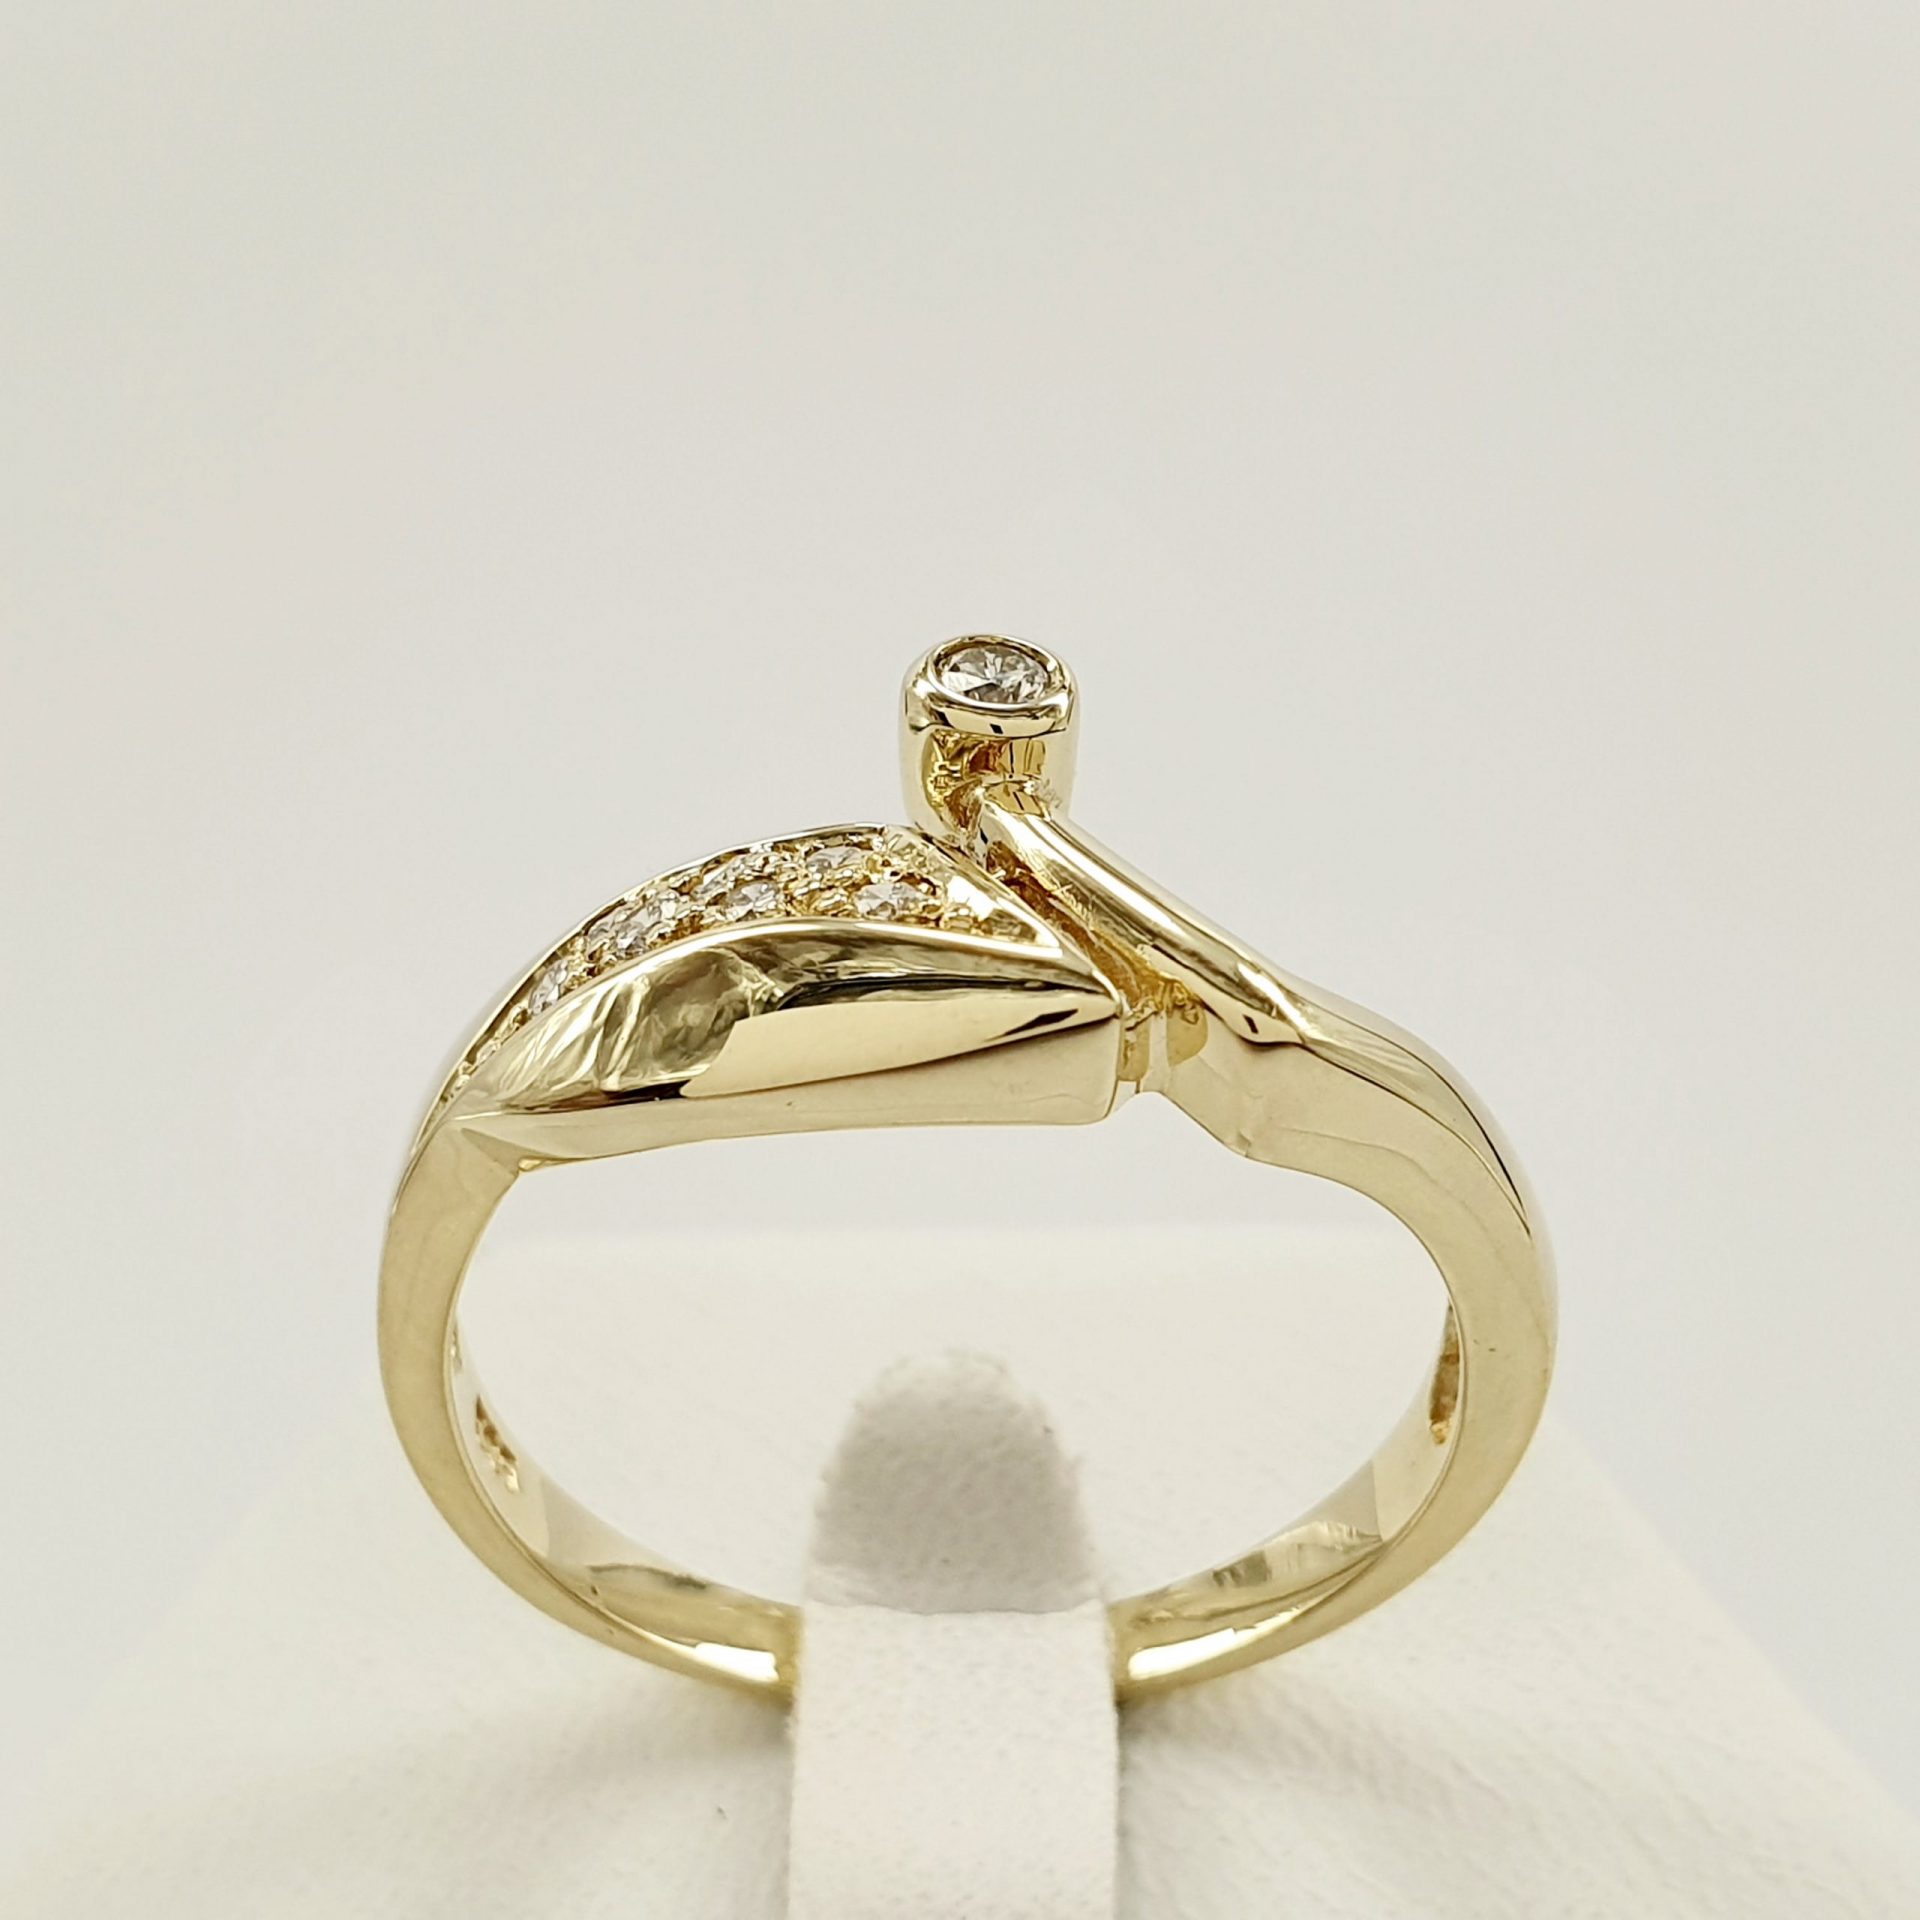 Oryginalny i niepowtarzalny złoty pierścionek z żółtego złota 14K